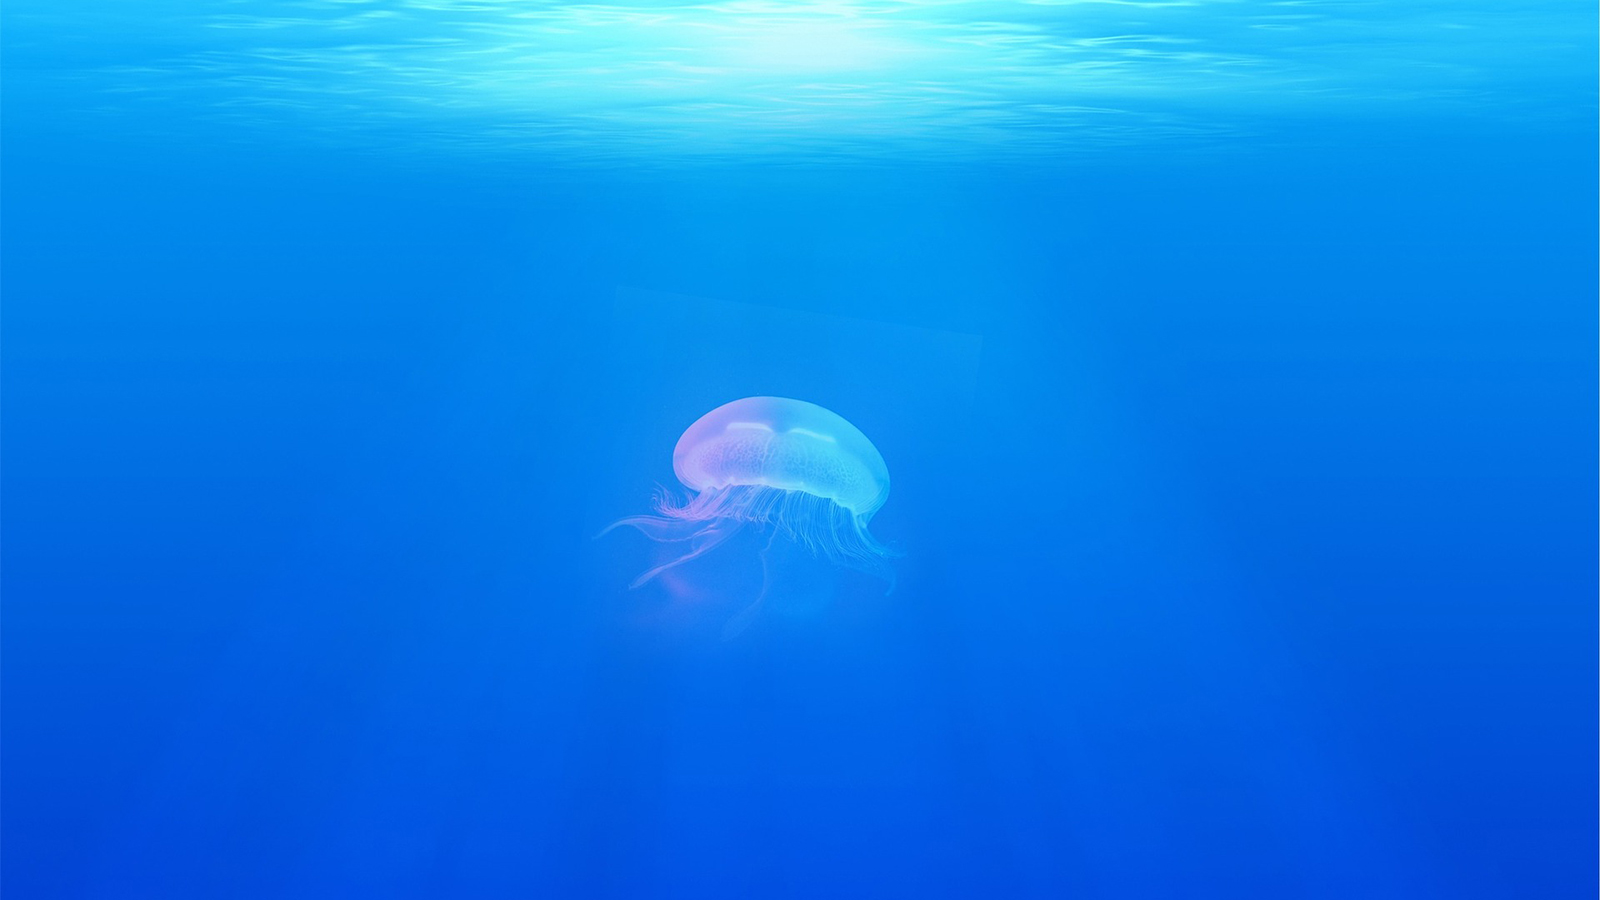 ‪الباحثون عثروا على العديد من الأشياء الغريبة والغامضة في أعماق البحار‬ (بيكسابي)